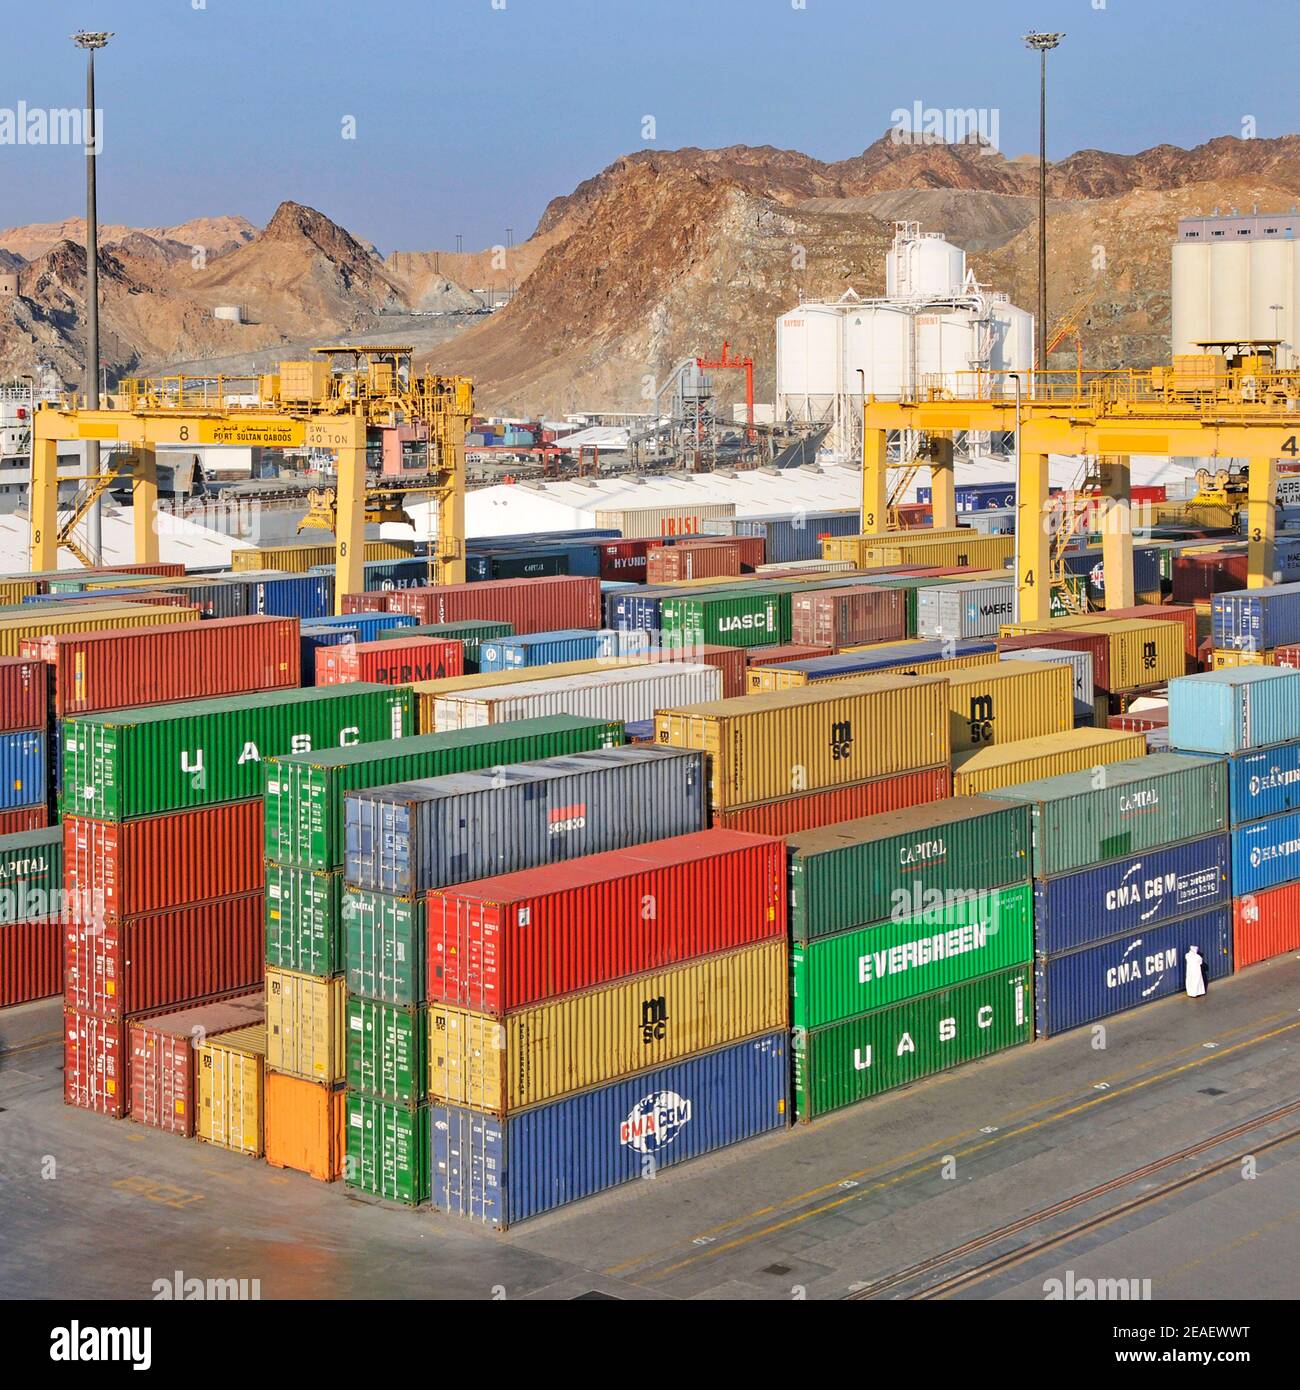 Vue aérienne du quai commercial et des conteneurs d'expédition colorés sous jaune Grues mobiles au Port Sultan Qaboos Muttrah Muscat Golfe de Oman Moyen-Orient Banque D'Images